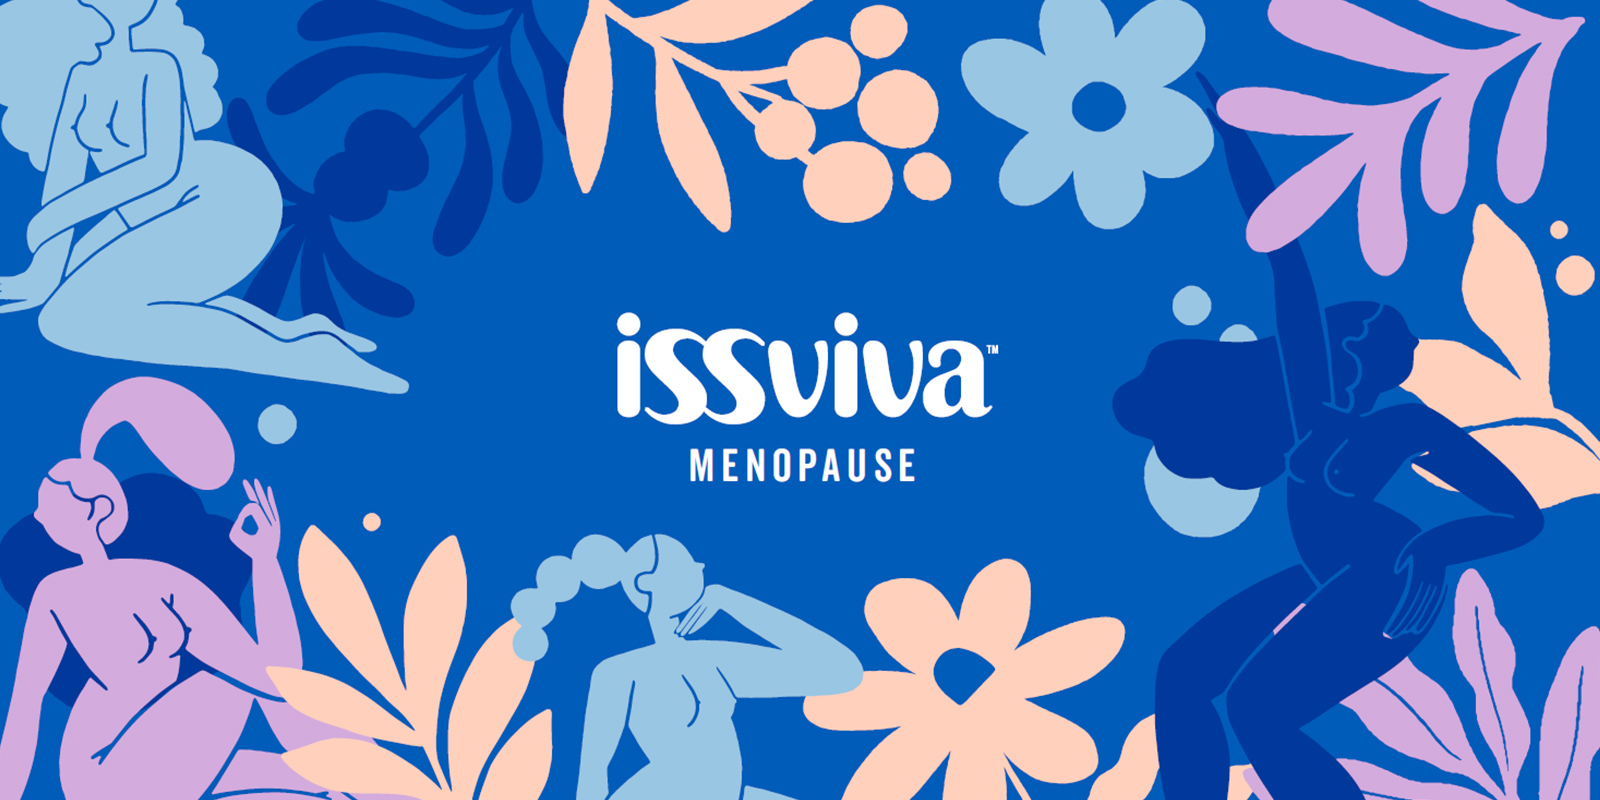 Ilustraciones de flores y figuras femeninas para patrón decorativo branding Issviva por Tridimage.